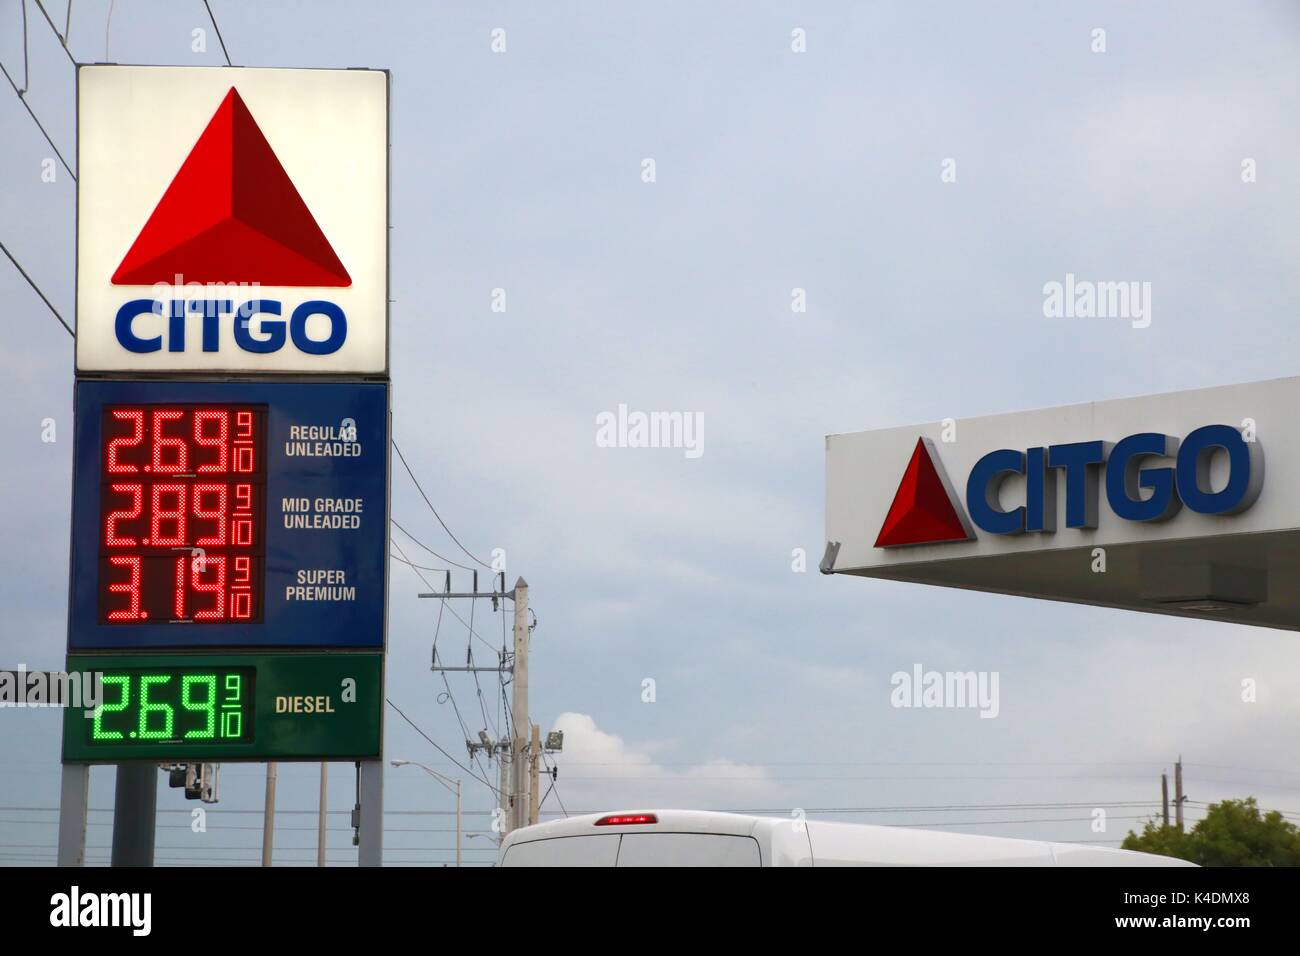 Gasolinera citgo ofrece regularmente $2.69 y 9/10ths de grado medio en $2,89 y 9/10ths super premium a $3,19 y 9/10ths y diesel a $2.69 y 9/10ths Foto de stock